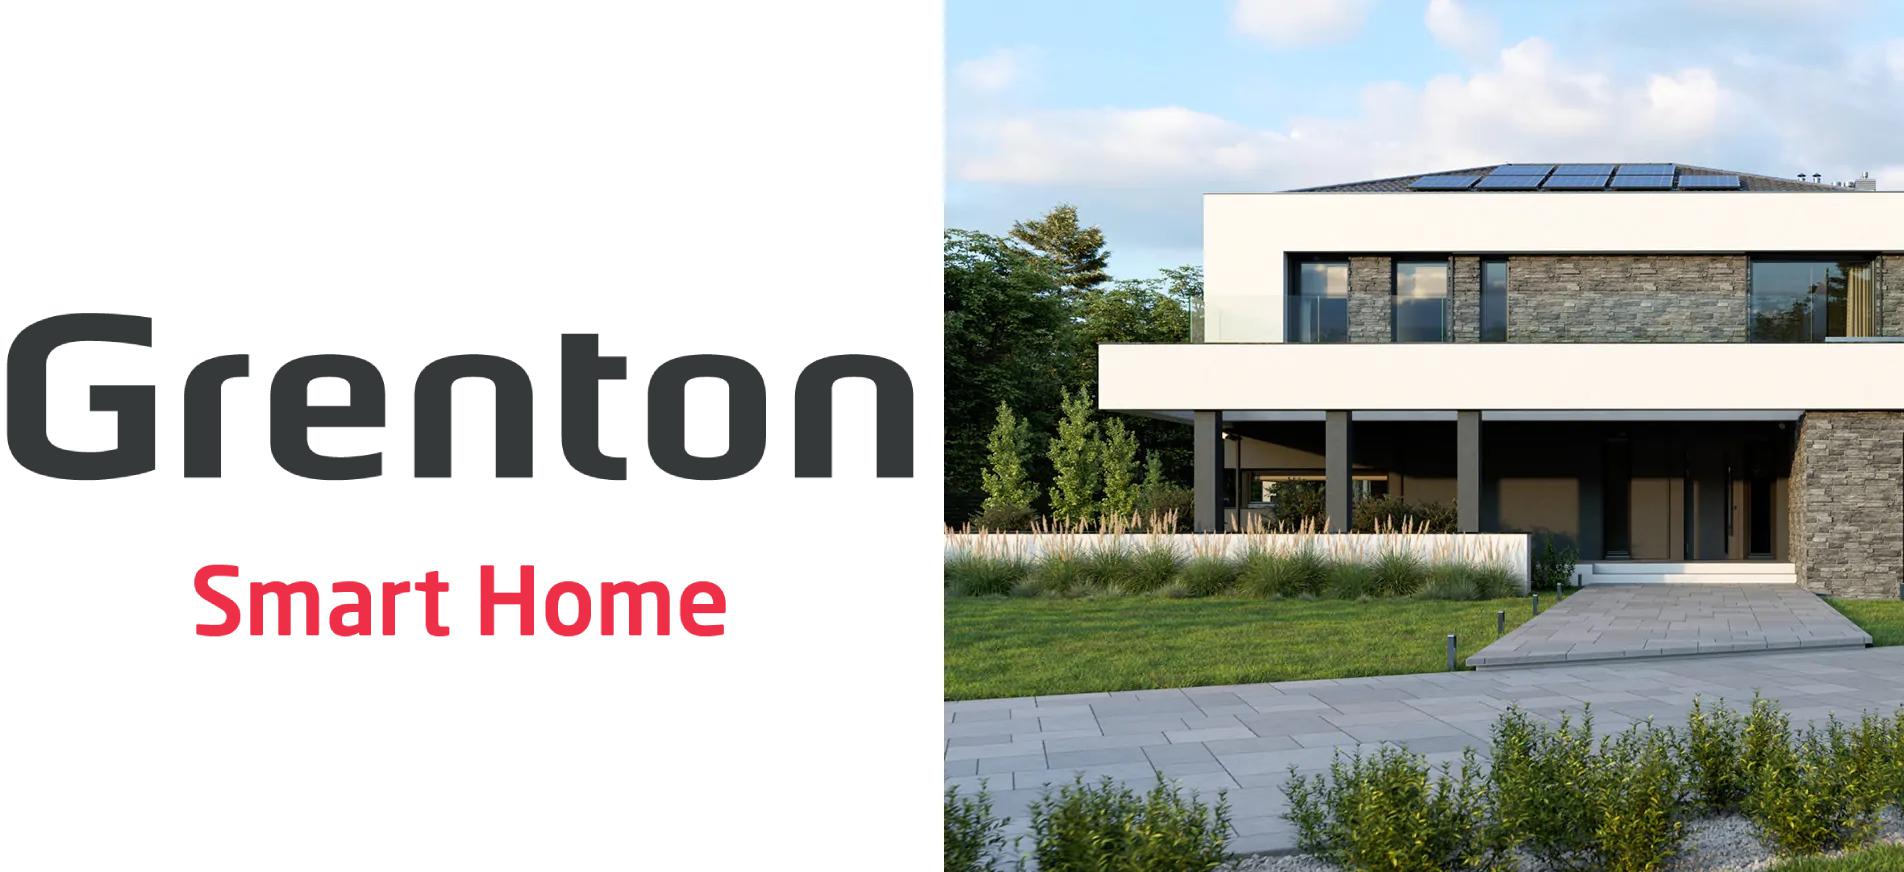 Poznaj gotowe systemy Smart Home złożone z rozwiązań marki Grenton - ciesz się komfortem swojego inteligentnego domu!